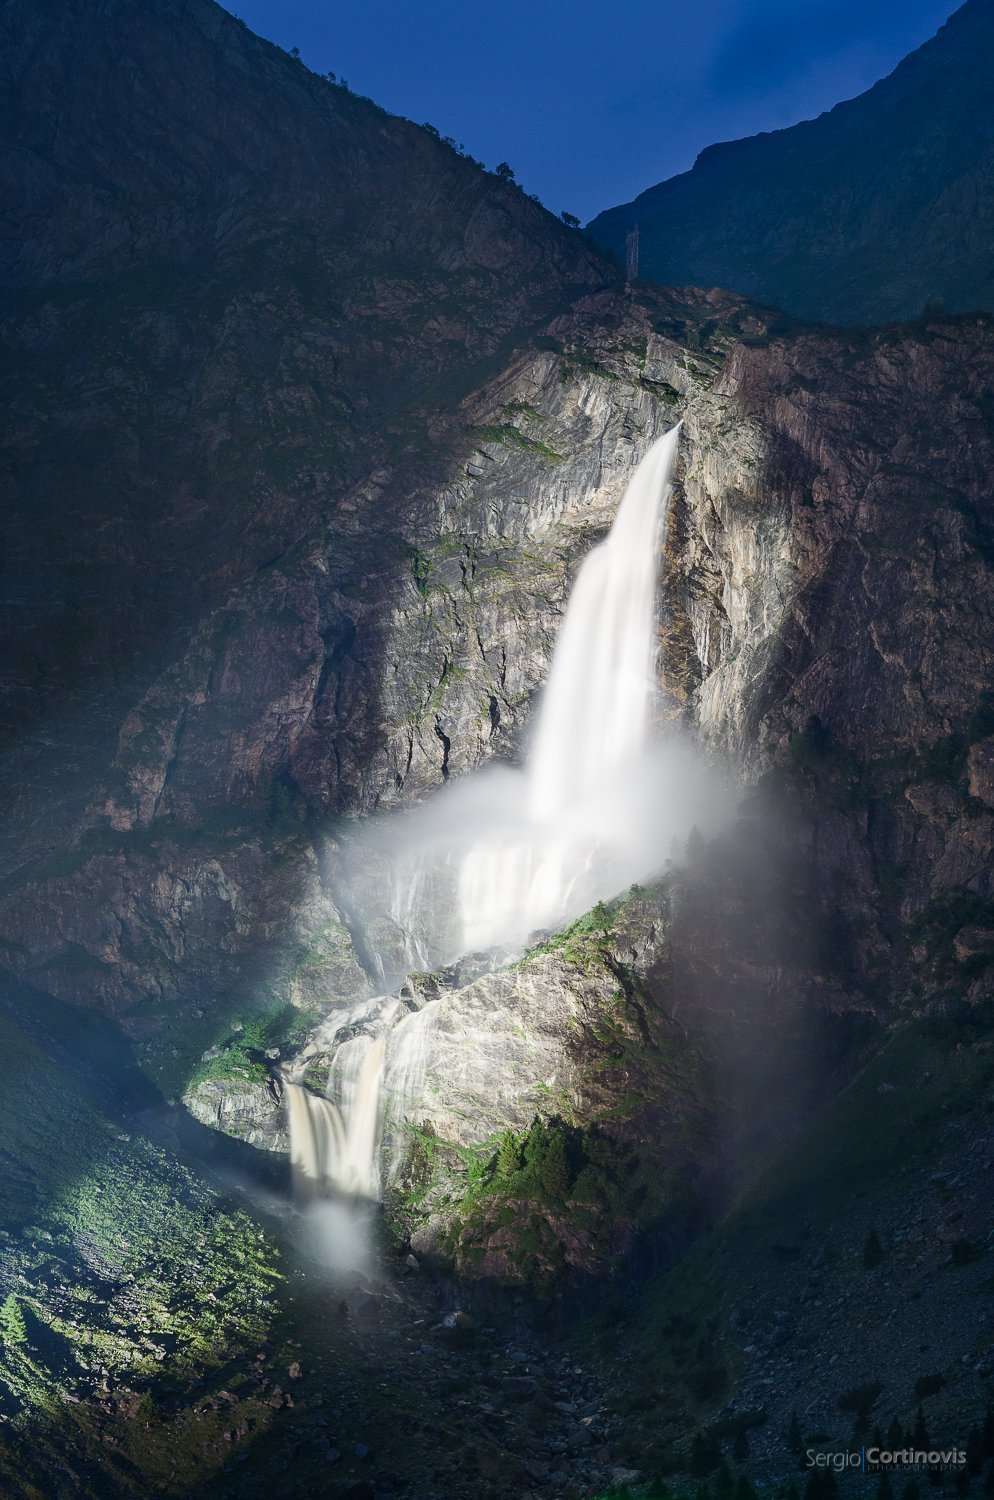 Le cascate del fiume Serio (a Valbondione, provincia di Bergamo, vicino al rifugio Curò) aperte di notte, illuminate da potenti fari